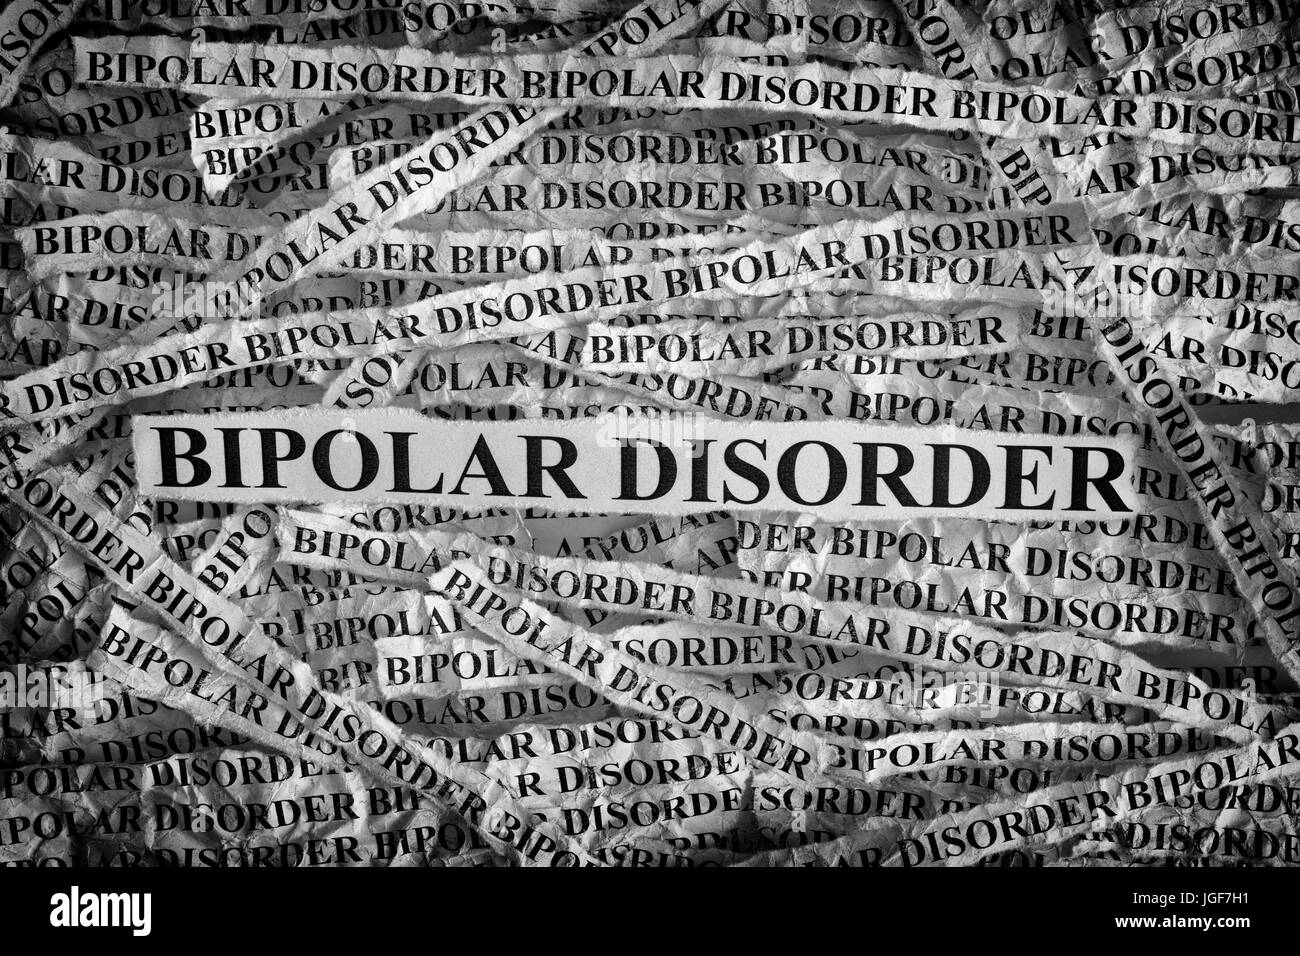 Bipolare Störung. Zerrissenen Zettel mit den Worten einer bipolaren Störung. Konzept-Bild. Schwarz und weiß. Closeup. Stockfoto